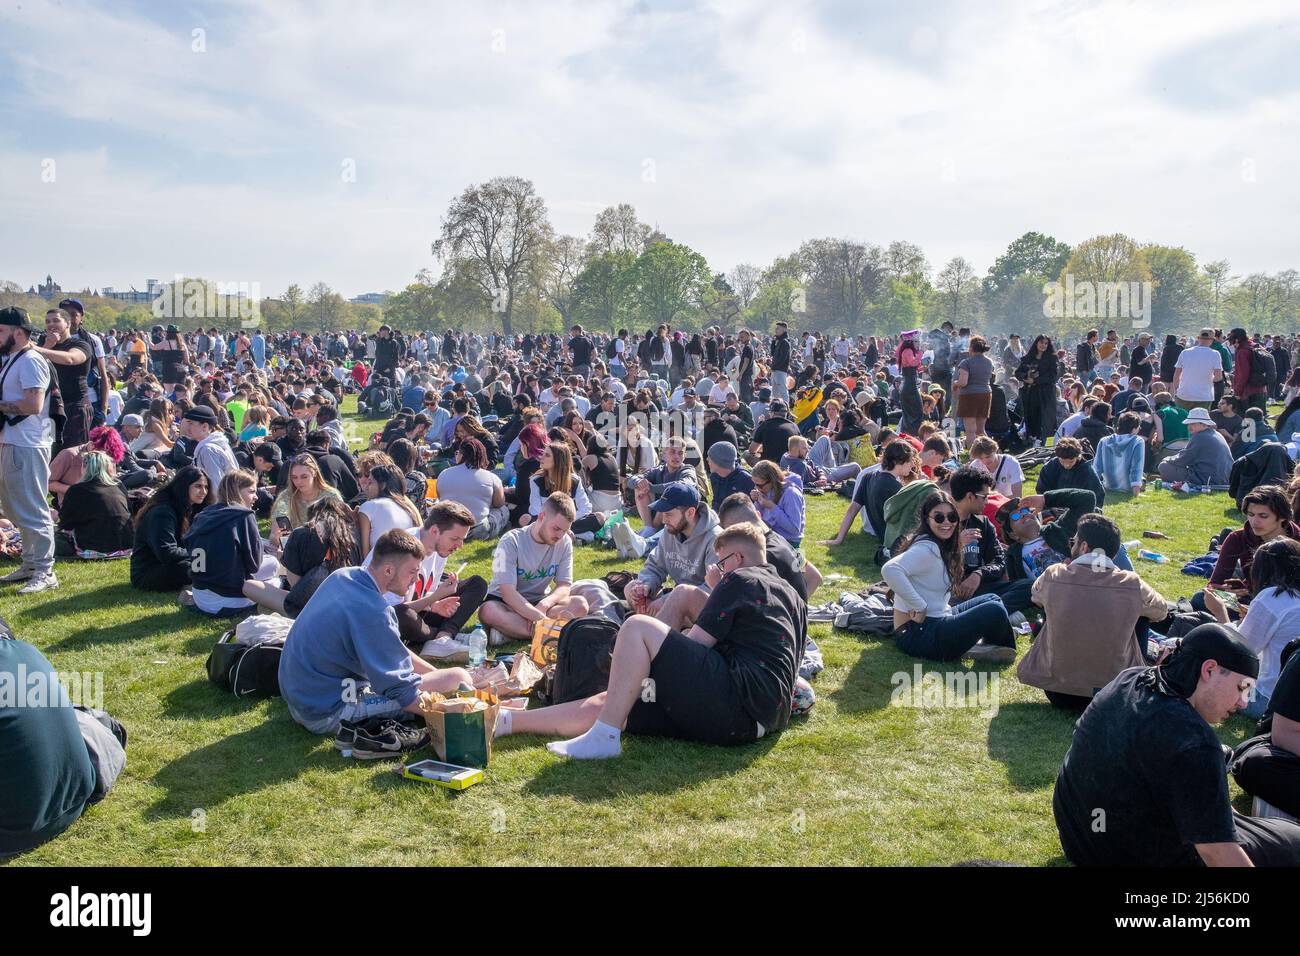 LONDRES, AVRIL 20 2022. Des milliers de personnes se rassemblent à Hyde Park à Londres pour célébrer 4/20, autrement connu sous le nom de World Weed Day, : cet événement est observé chaque année dans le monde entier par des fumeurs de cannabis pour protester contre la légalisation de la marijuana. Banque D'Images